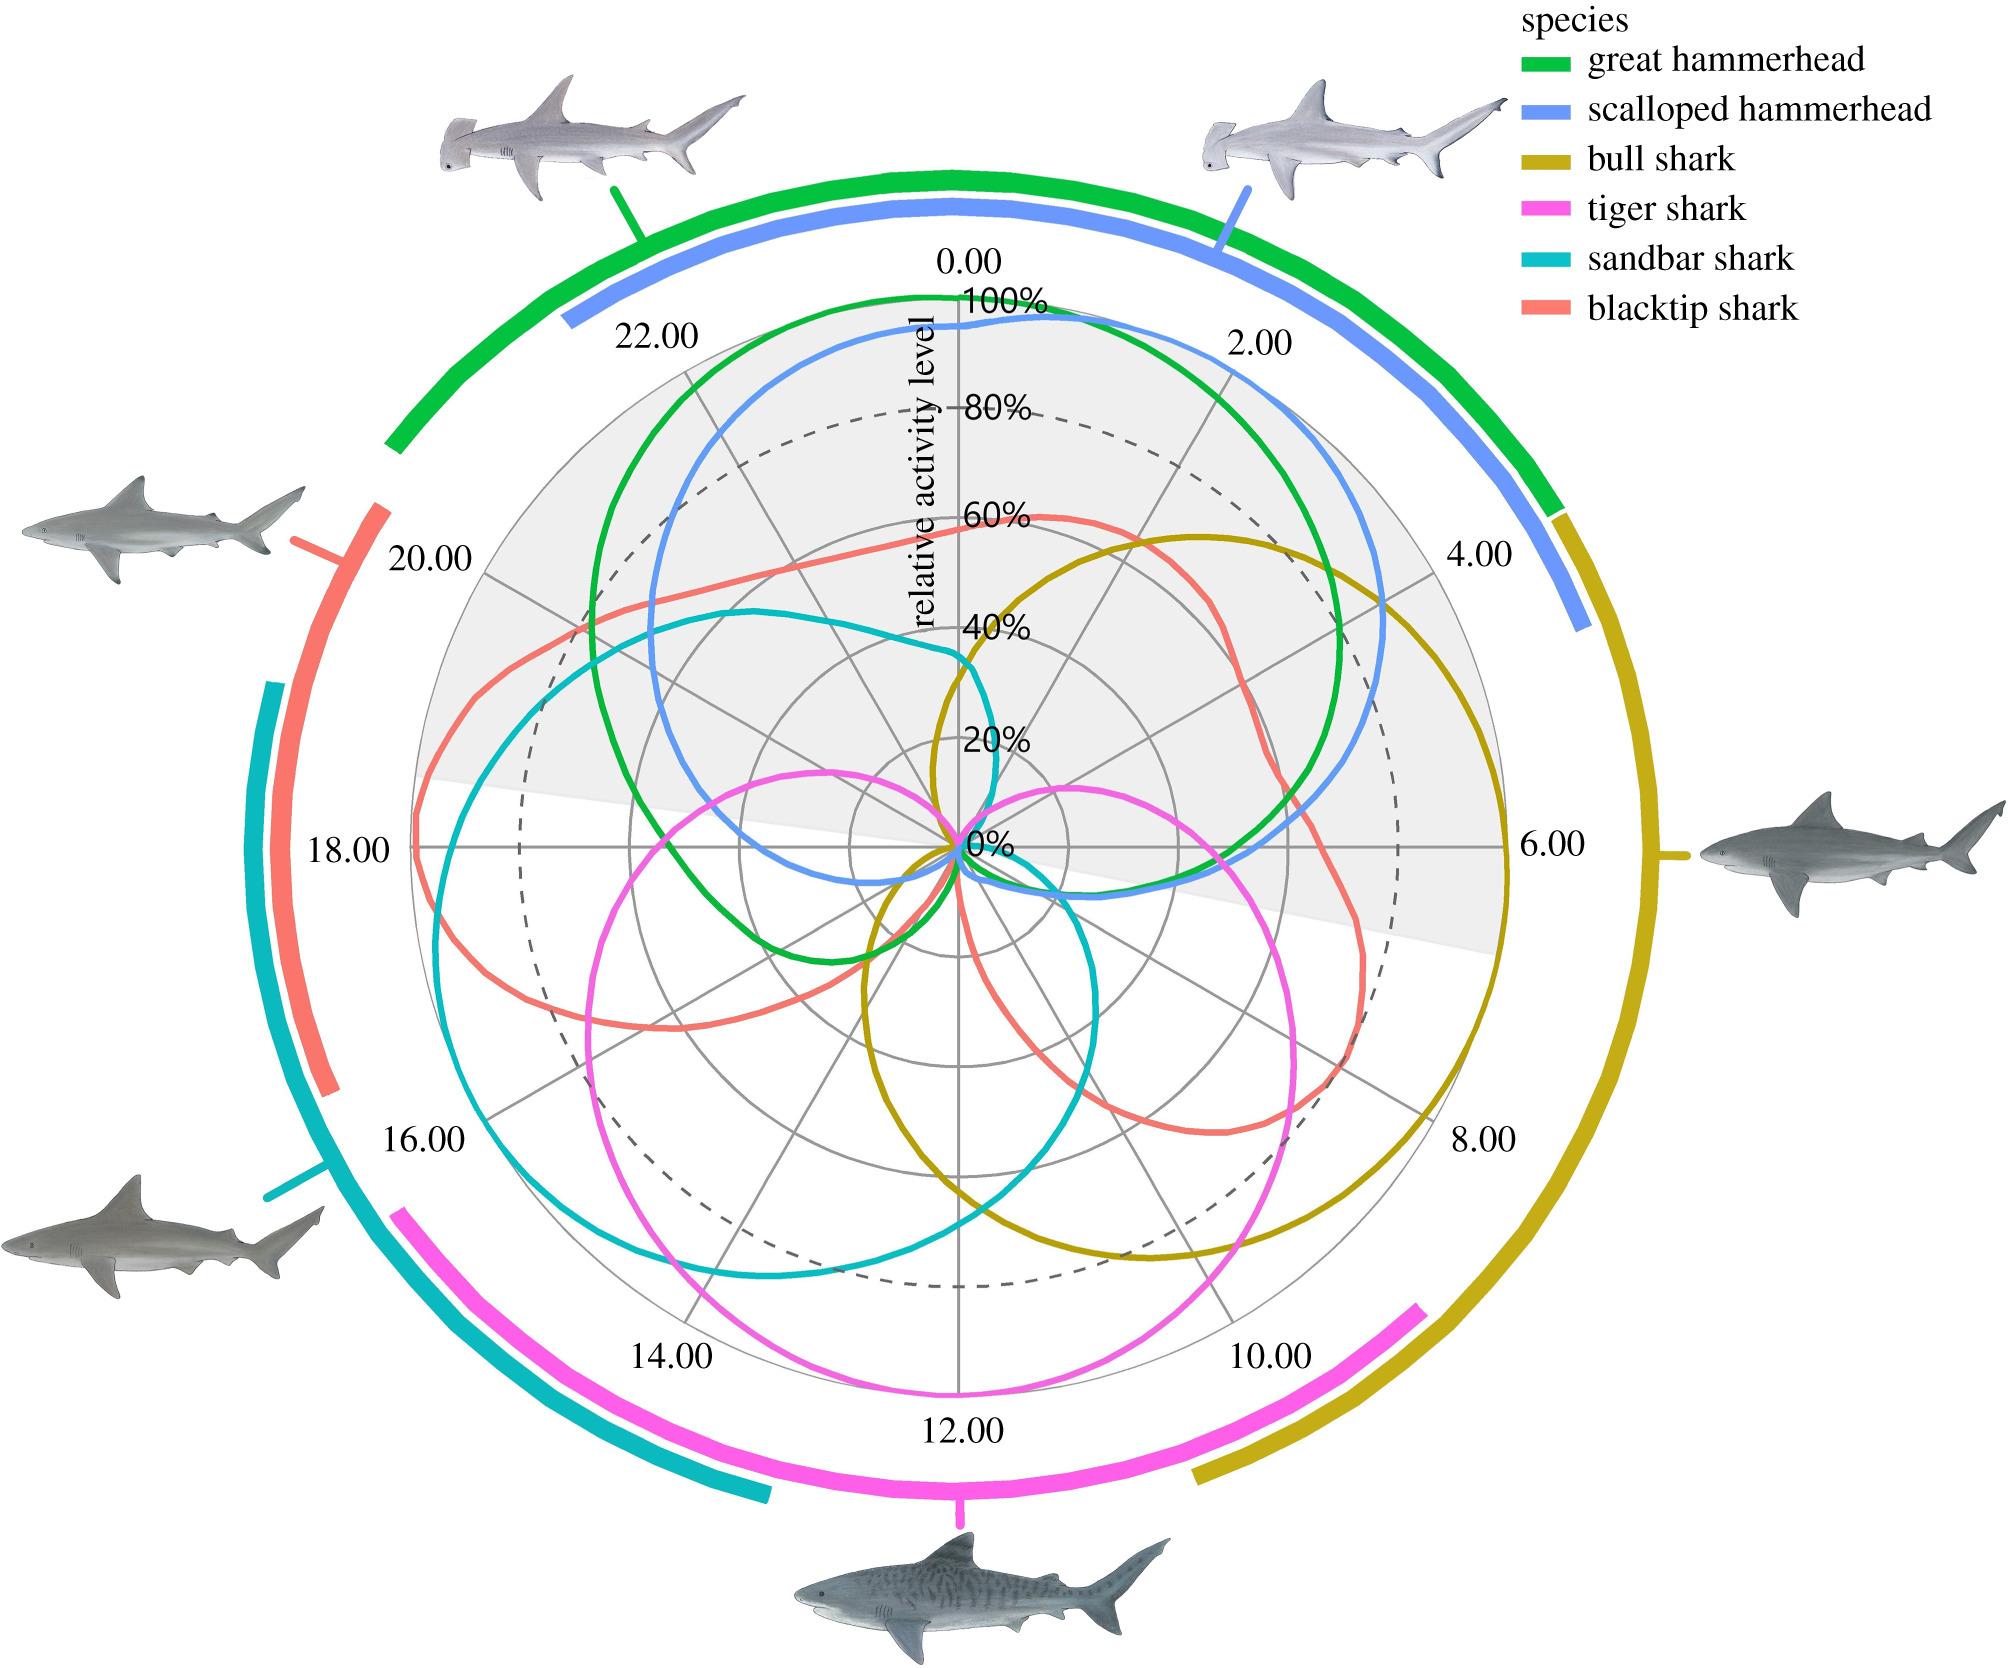 Пять видов акул предпочли не пересекаться на охоте и стали питаться в разное время суток